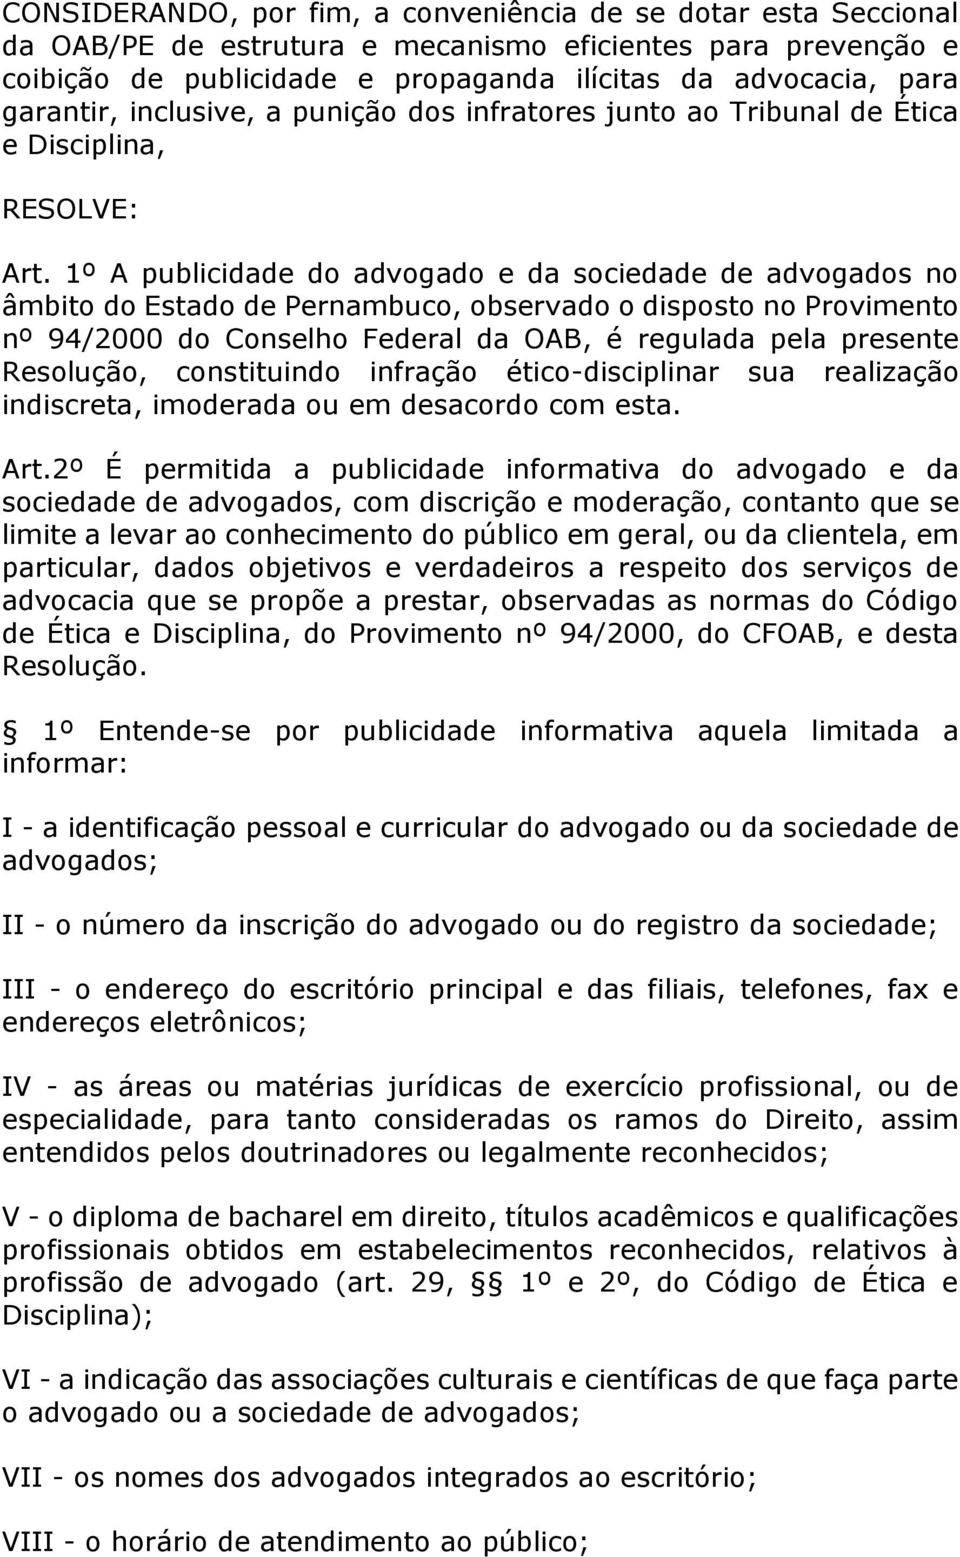 1º A publicidade do advogado e da sociedade de advogados no âmbito do Estado de Pernambuco, observado o disposto no Provimento nº 94/2000 do Conselho Federal da OAB, é regulada pela presente